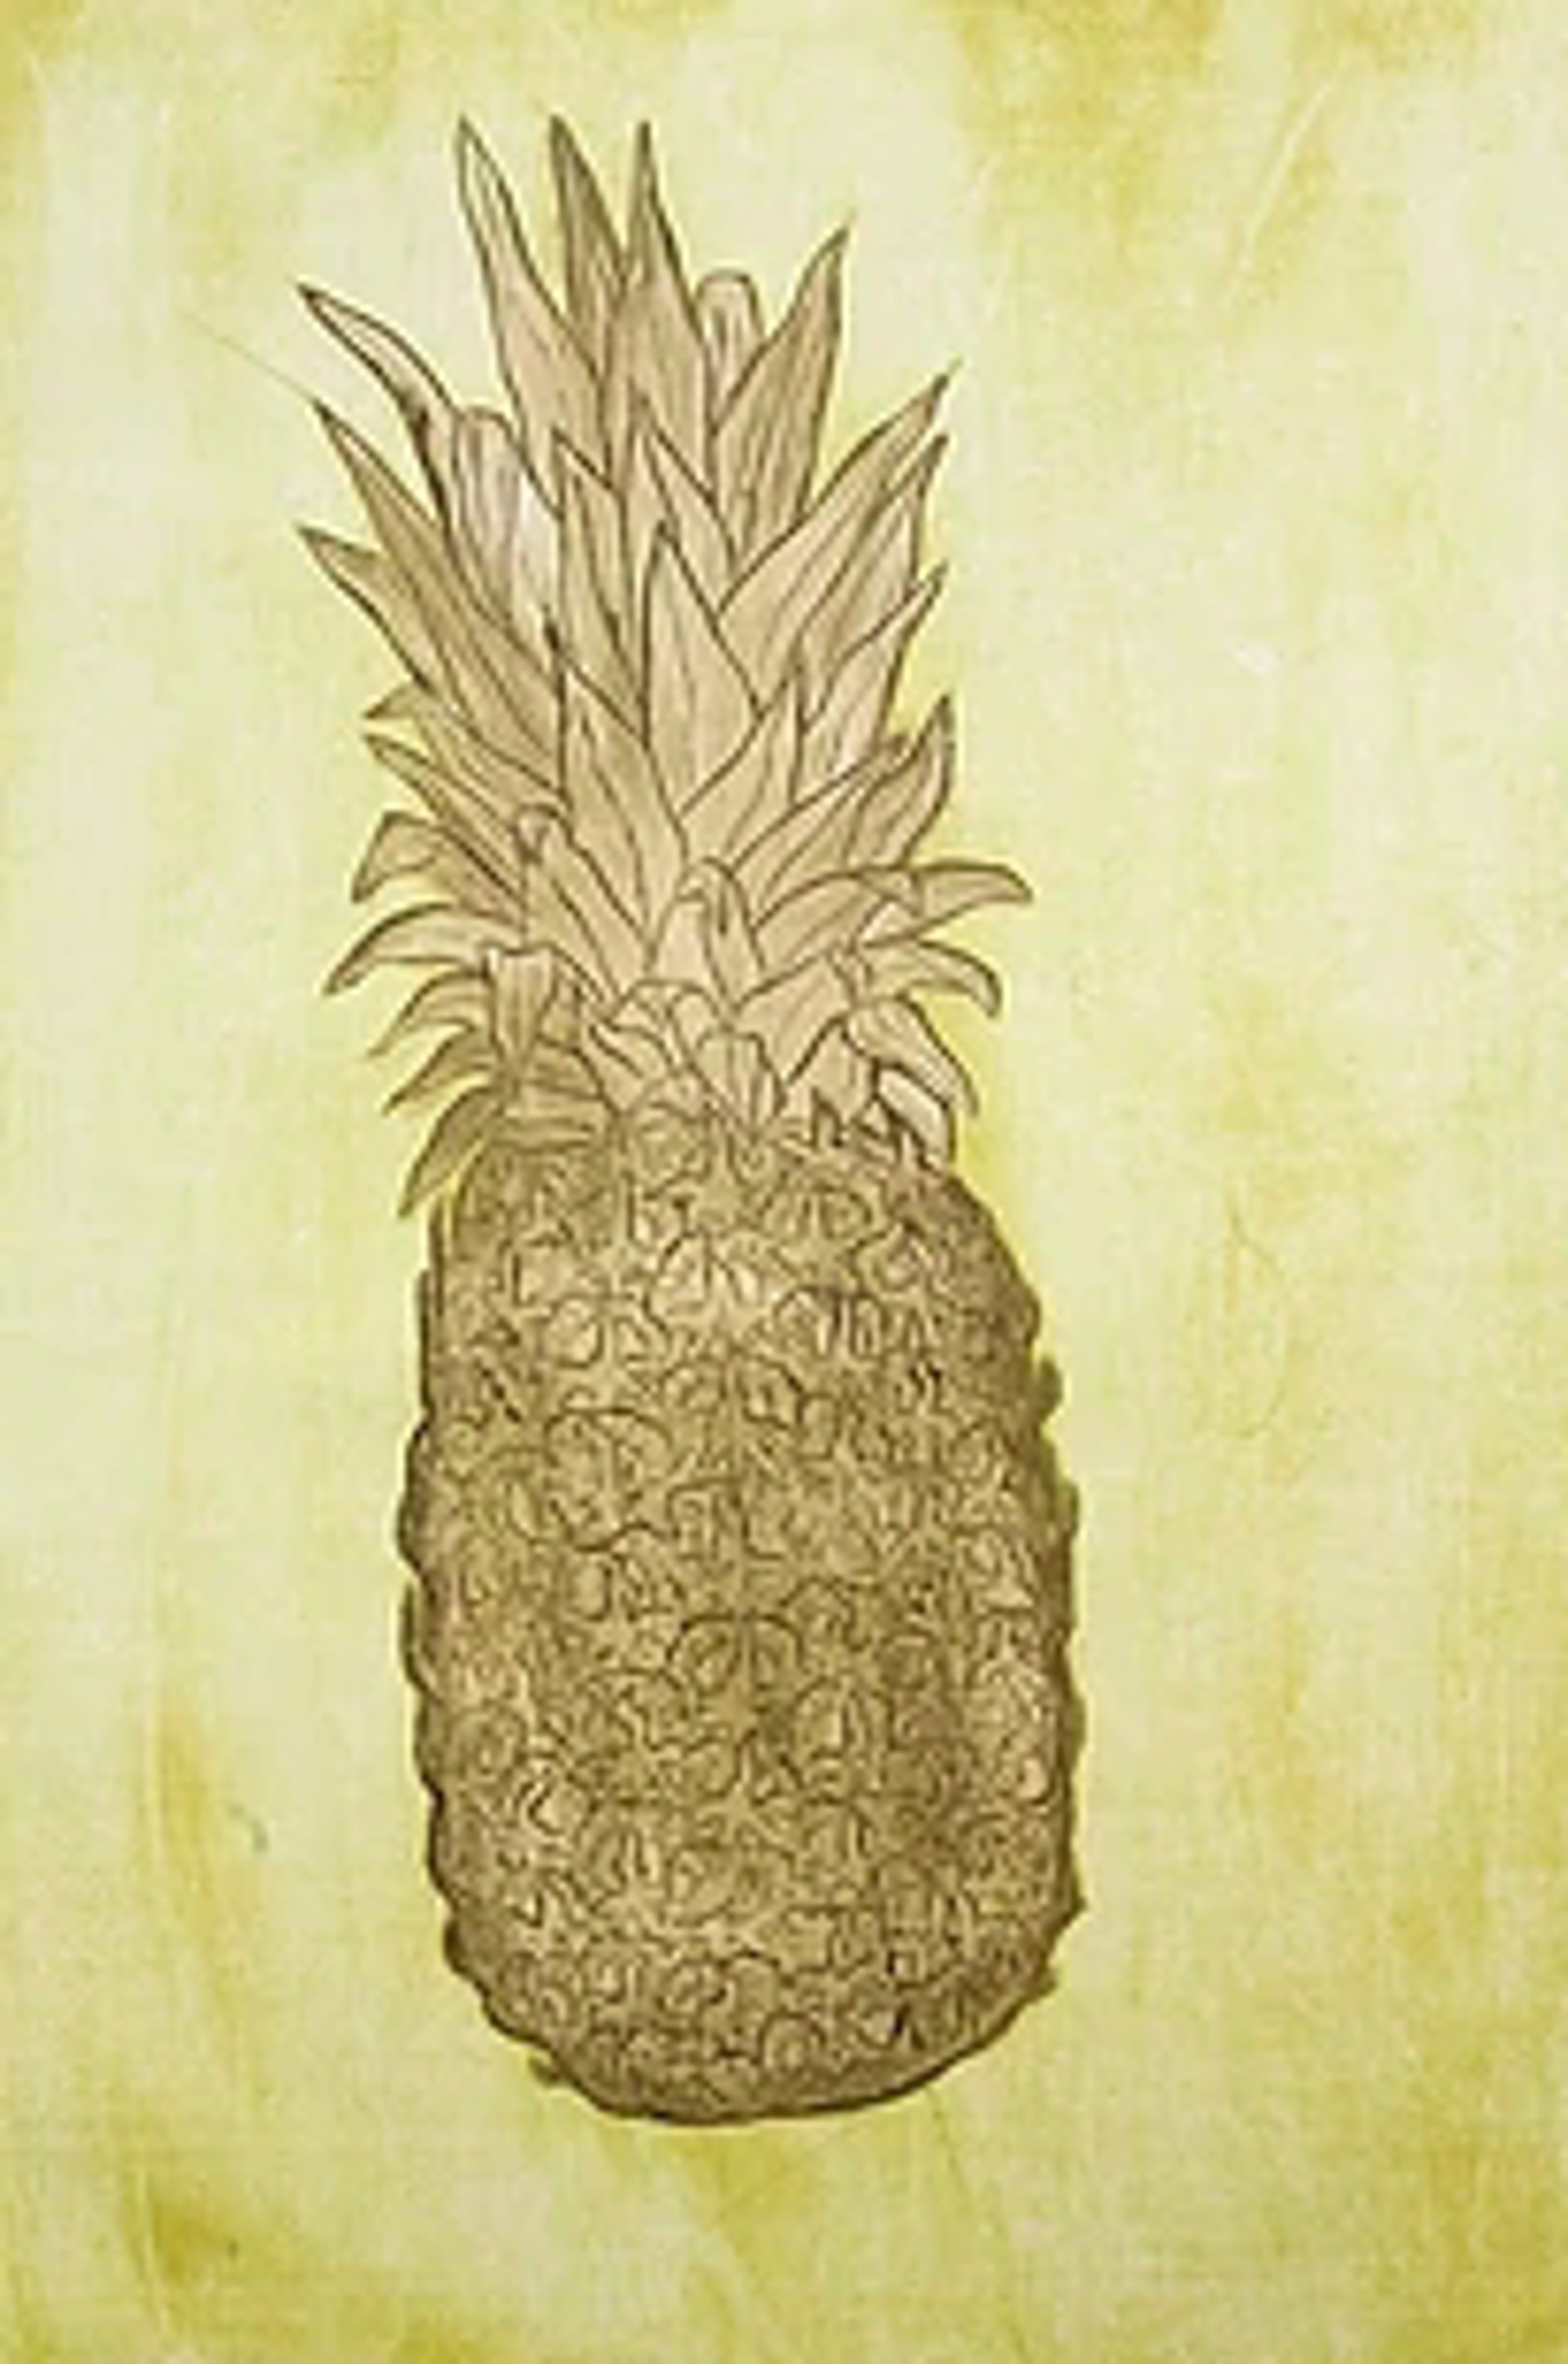 Pineapple by David Hefner